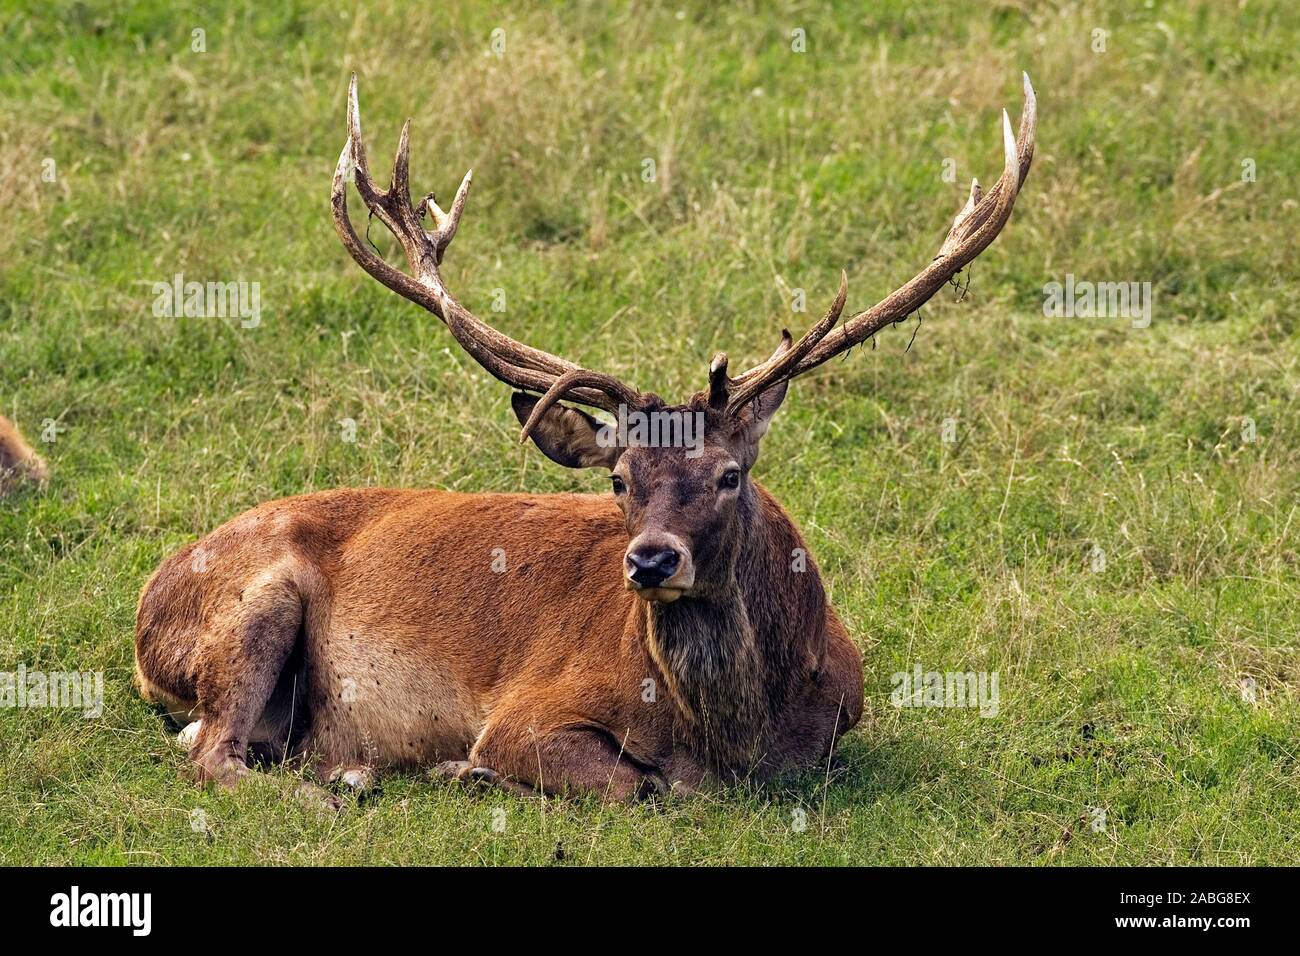 Rothirsch, maennlich (Cervus elaphus) Red Deer, macho ï Baden Wuerttemberg; Deutschland; Alemania Foto de stock